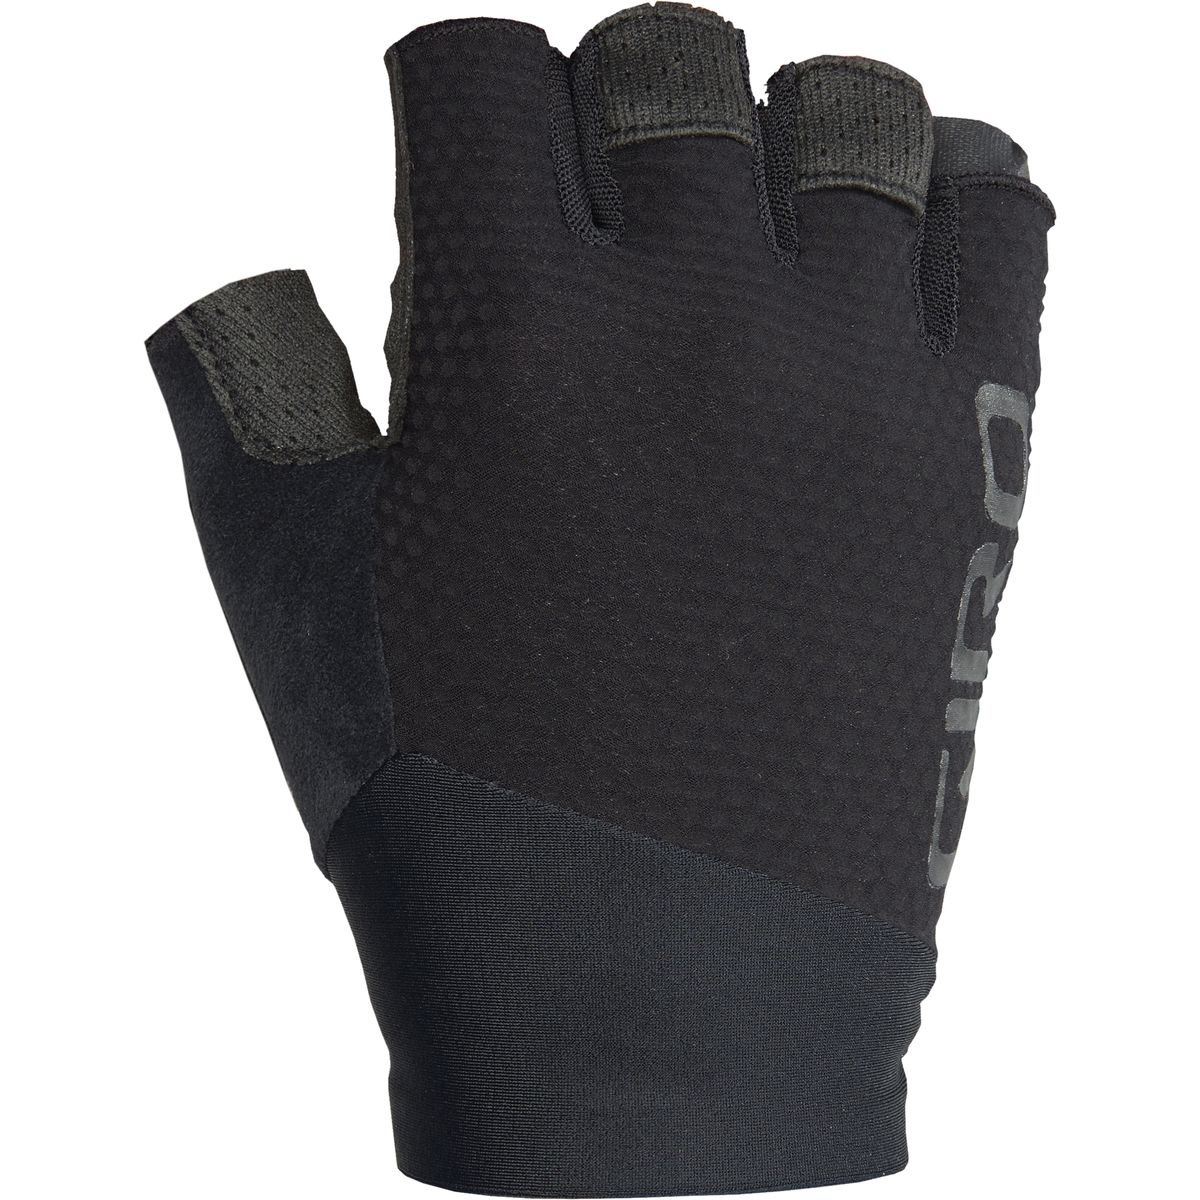 Giro Zero CS Glove - Men's Black, XXL